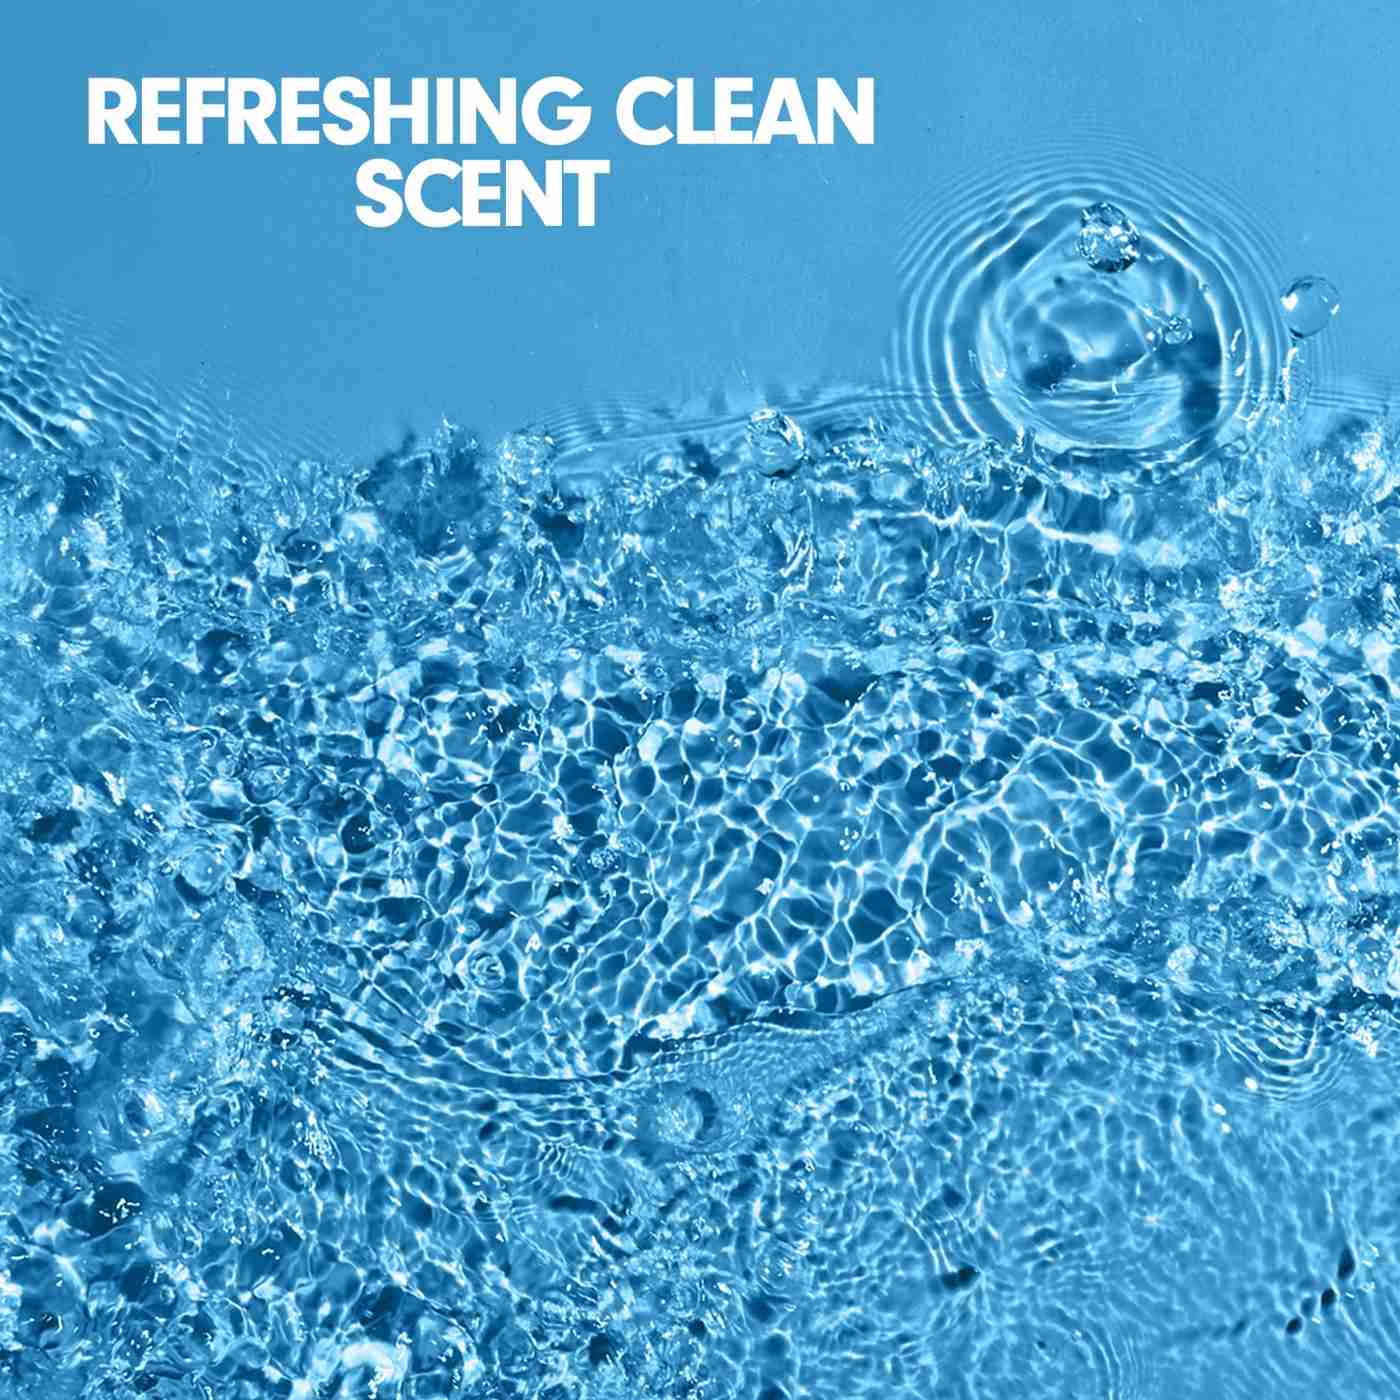 Softsoap Liquid Hand Soap Refill - Aquarium Series; image 2 of 2